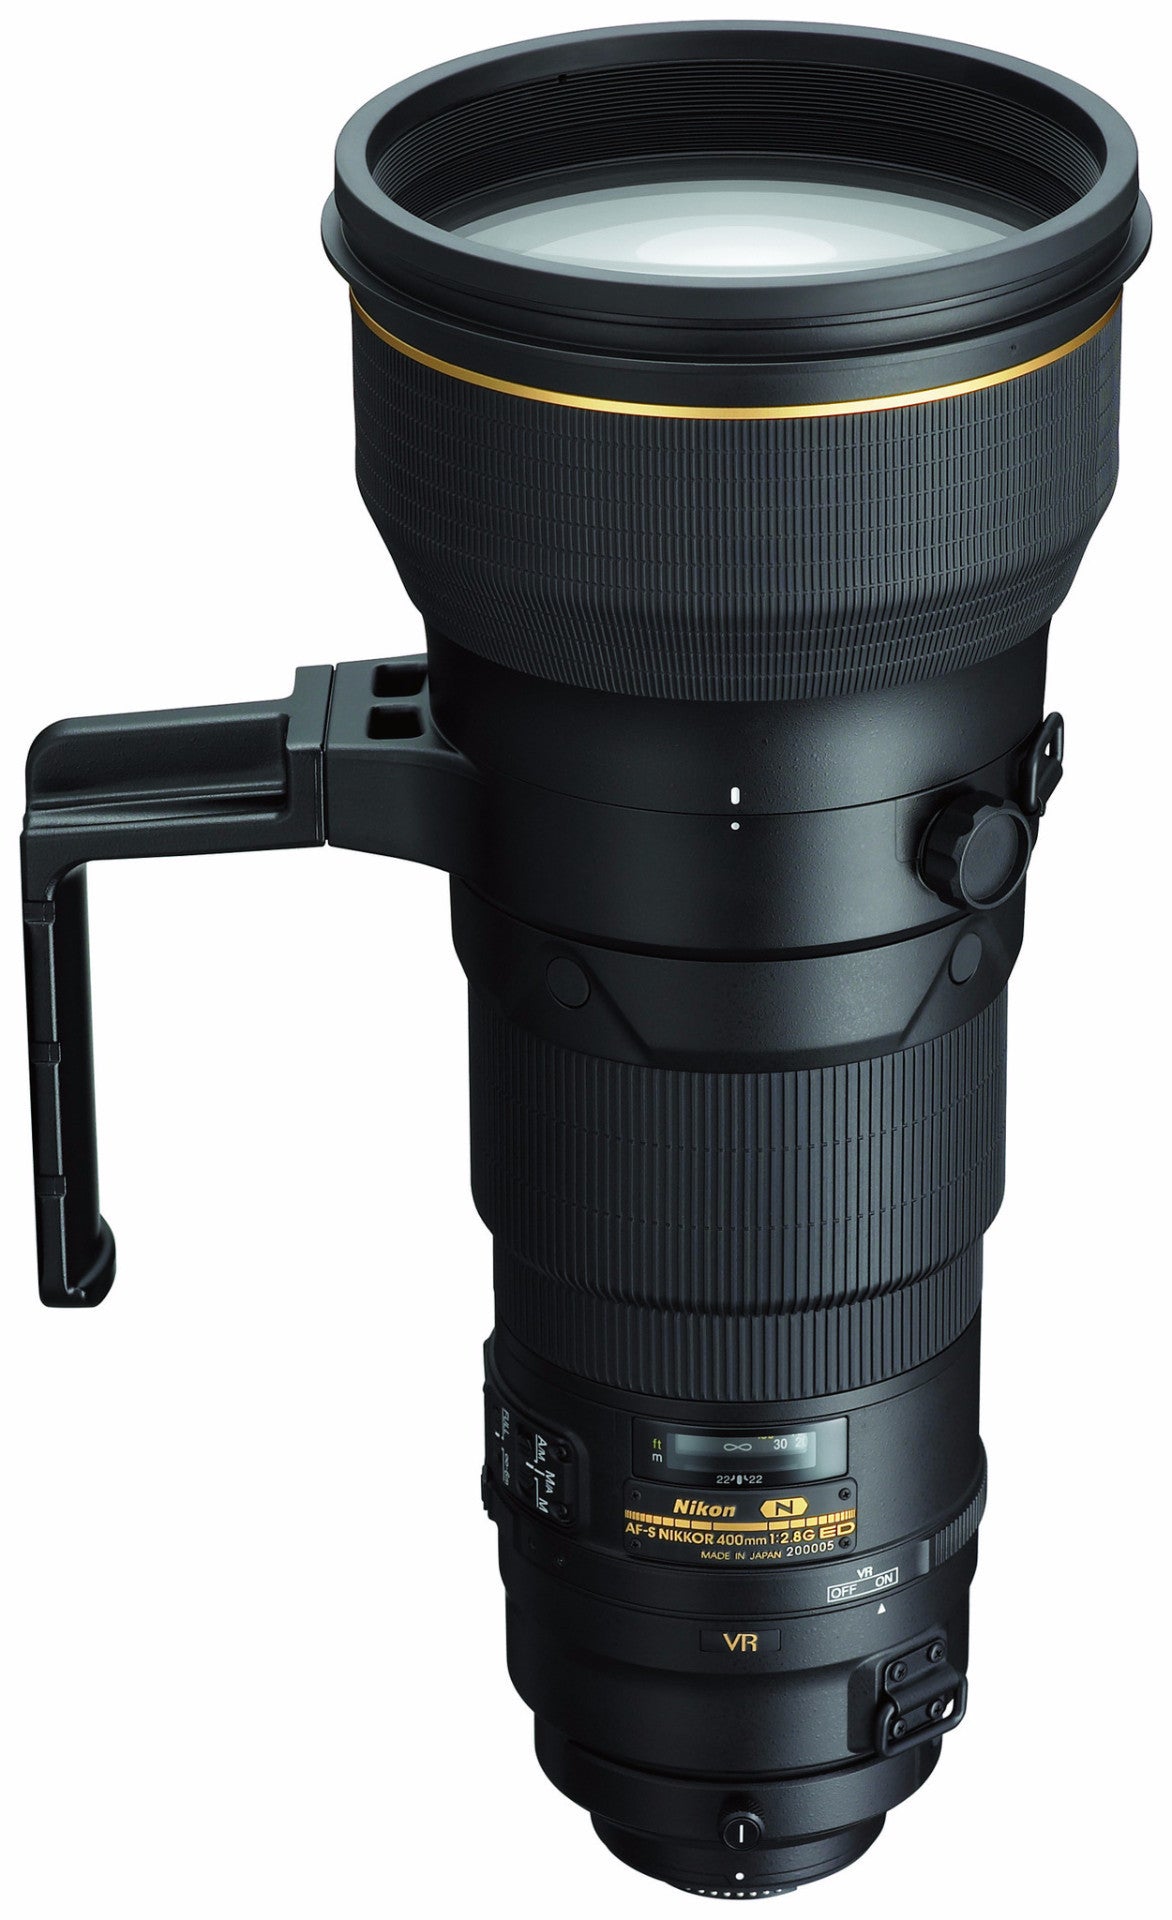 Nikon 400mm f/2.8 FL ED VR AF-S Lens, lenses slr lenses, Nikon - Pictureline  - 1